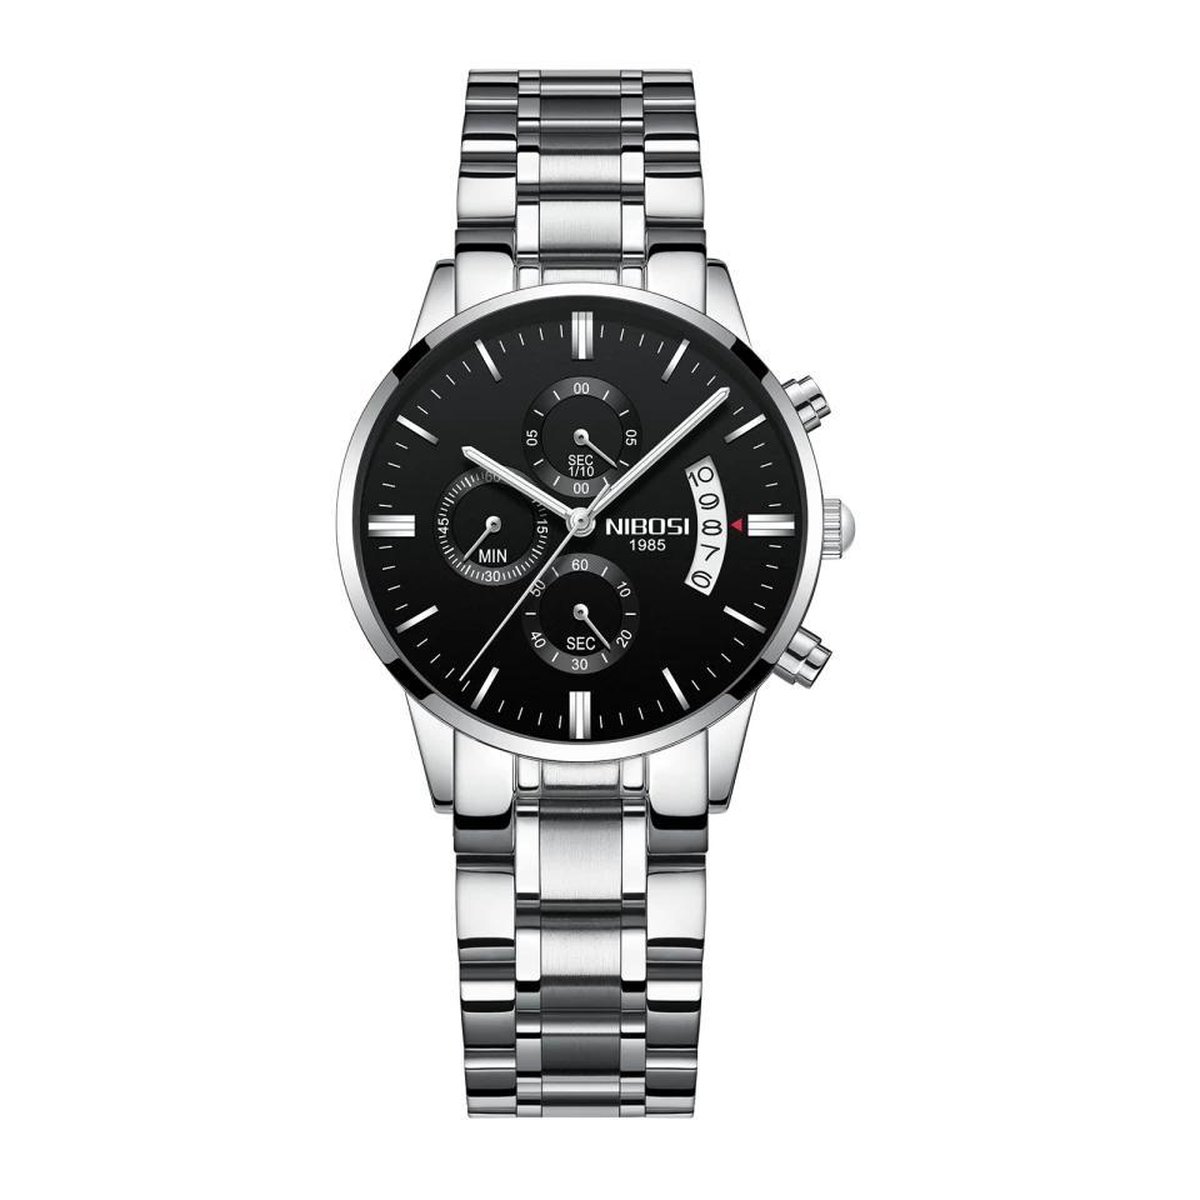 NIBOSI Horloges voor Vrouwen – Quartz - Ø 36 mm – Zilver/Zwart - Waterdicht tot 3 BAR - Chronograaf - Geschenkset